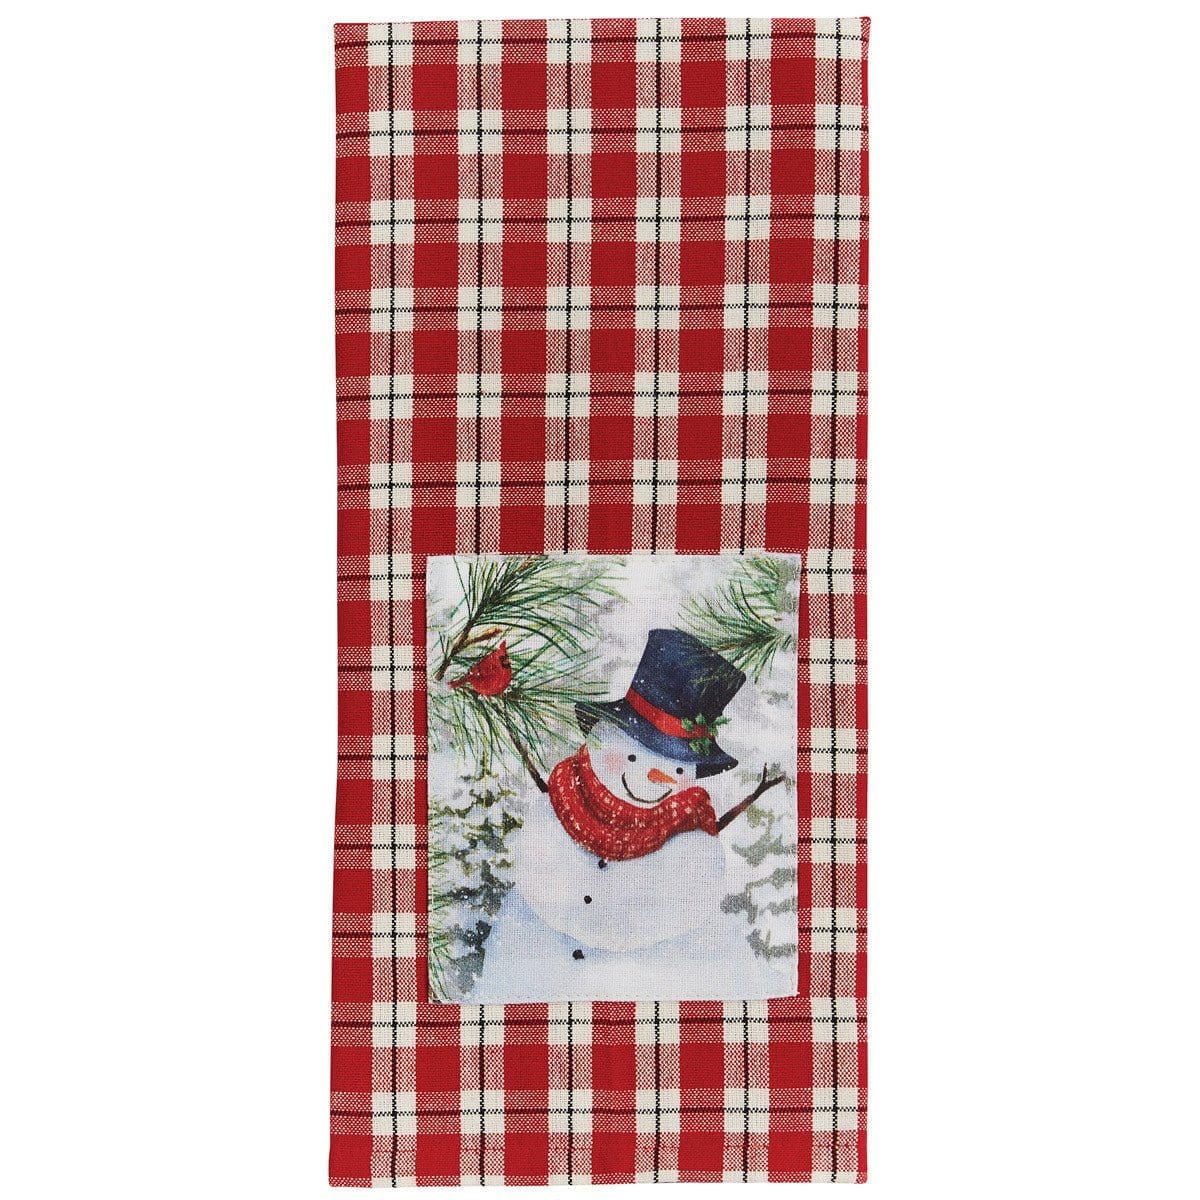 Flurry Snowman Decorative Towel-Park Designs-The Village Merchant